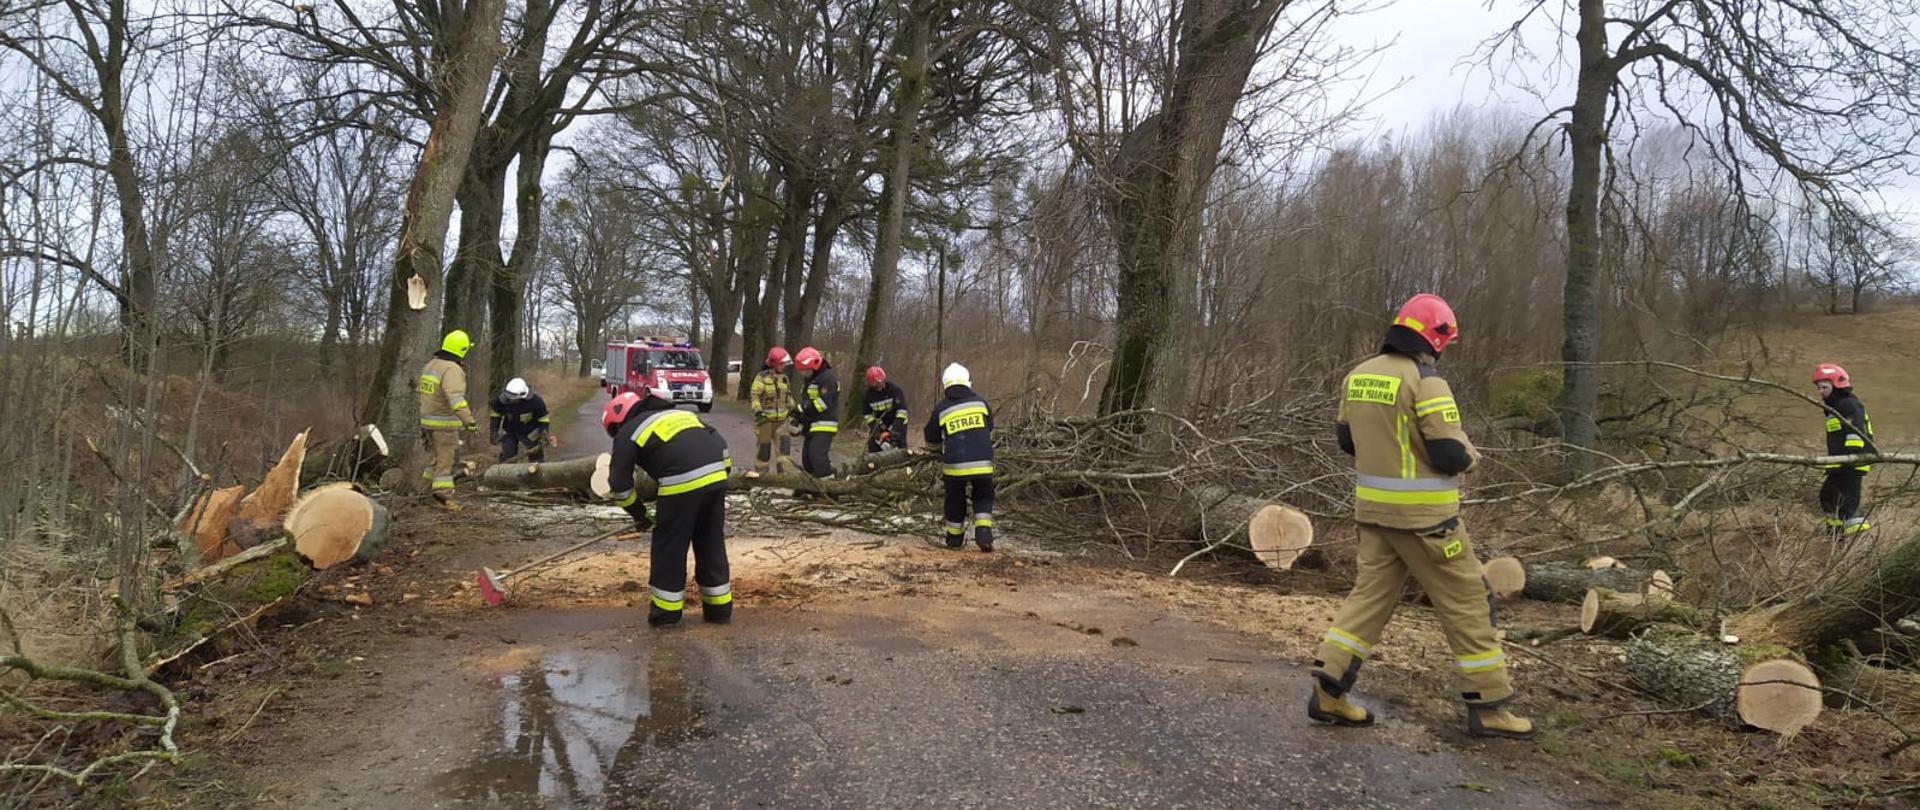 Zdjęcie przedstawia dziewięciu strażaków działających przy usuwaniu powalonego drzewa i złamanych konarów z drogi publicznej. W tle widoczny jest również pojazd pożarniczy